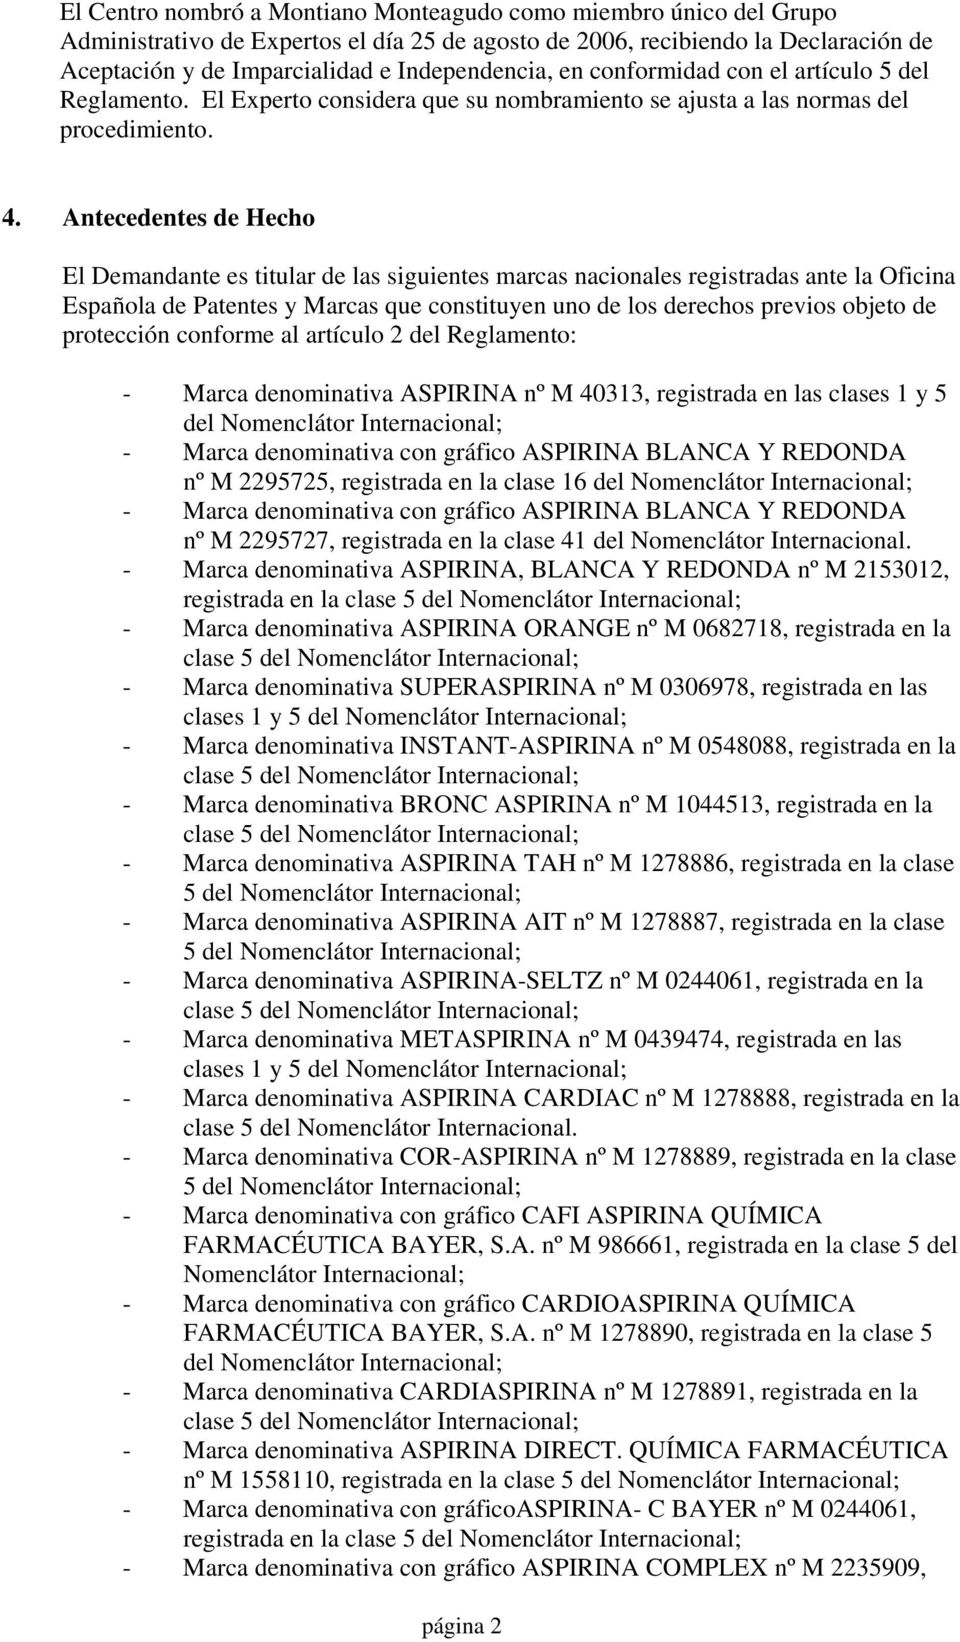 Antecedentes de Hecho El Demandante es titular de las siguientes marcas nacionales registradas ante la Oficina Española de Patentes y Marcas que constituyen uno de los derechos previos objeto de